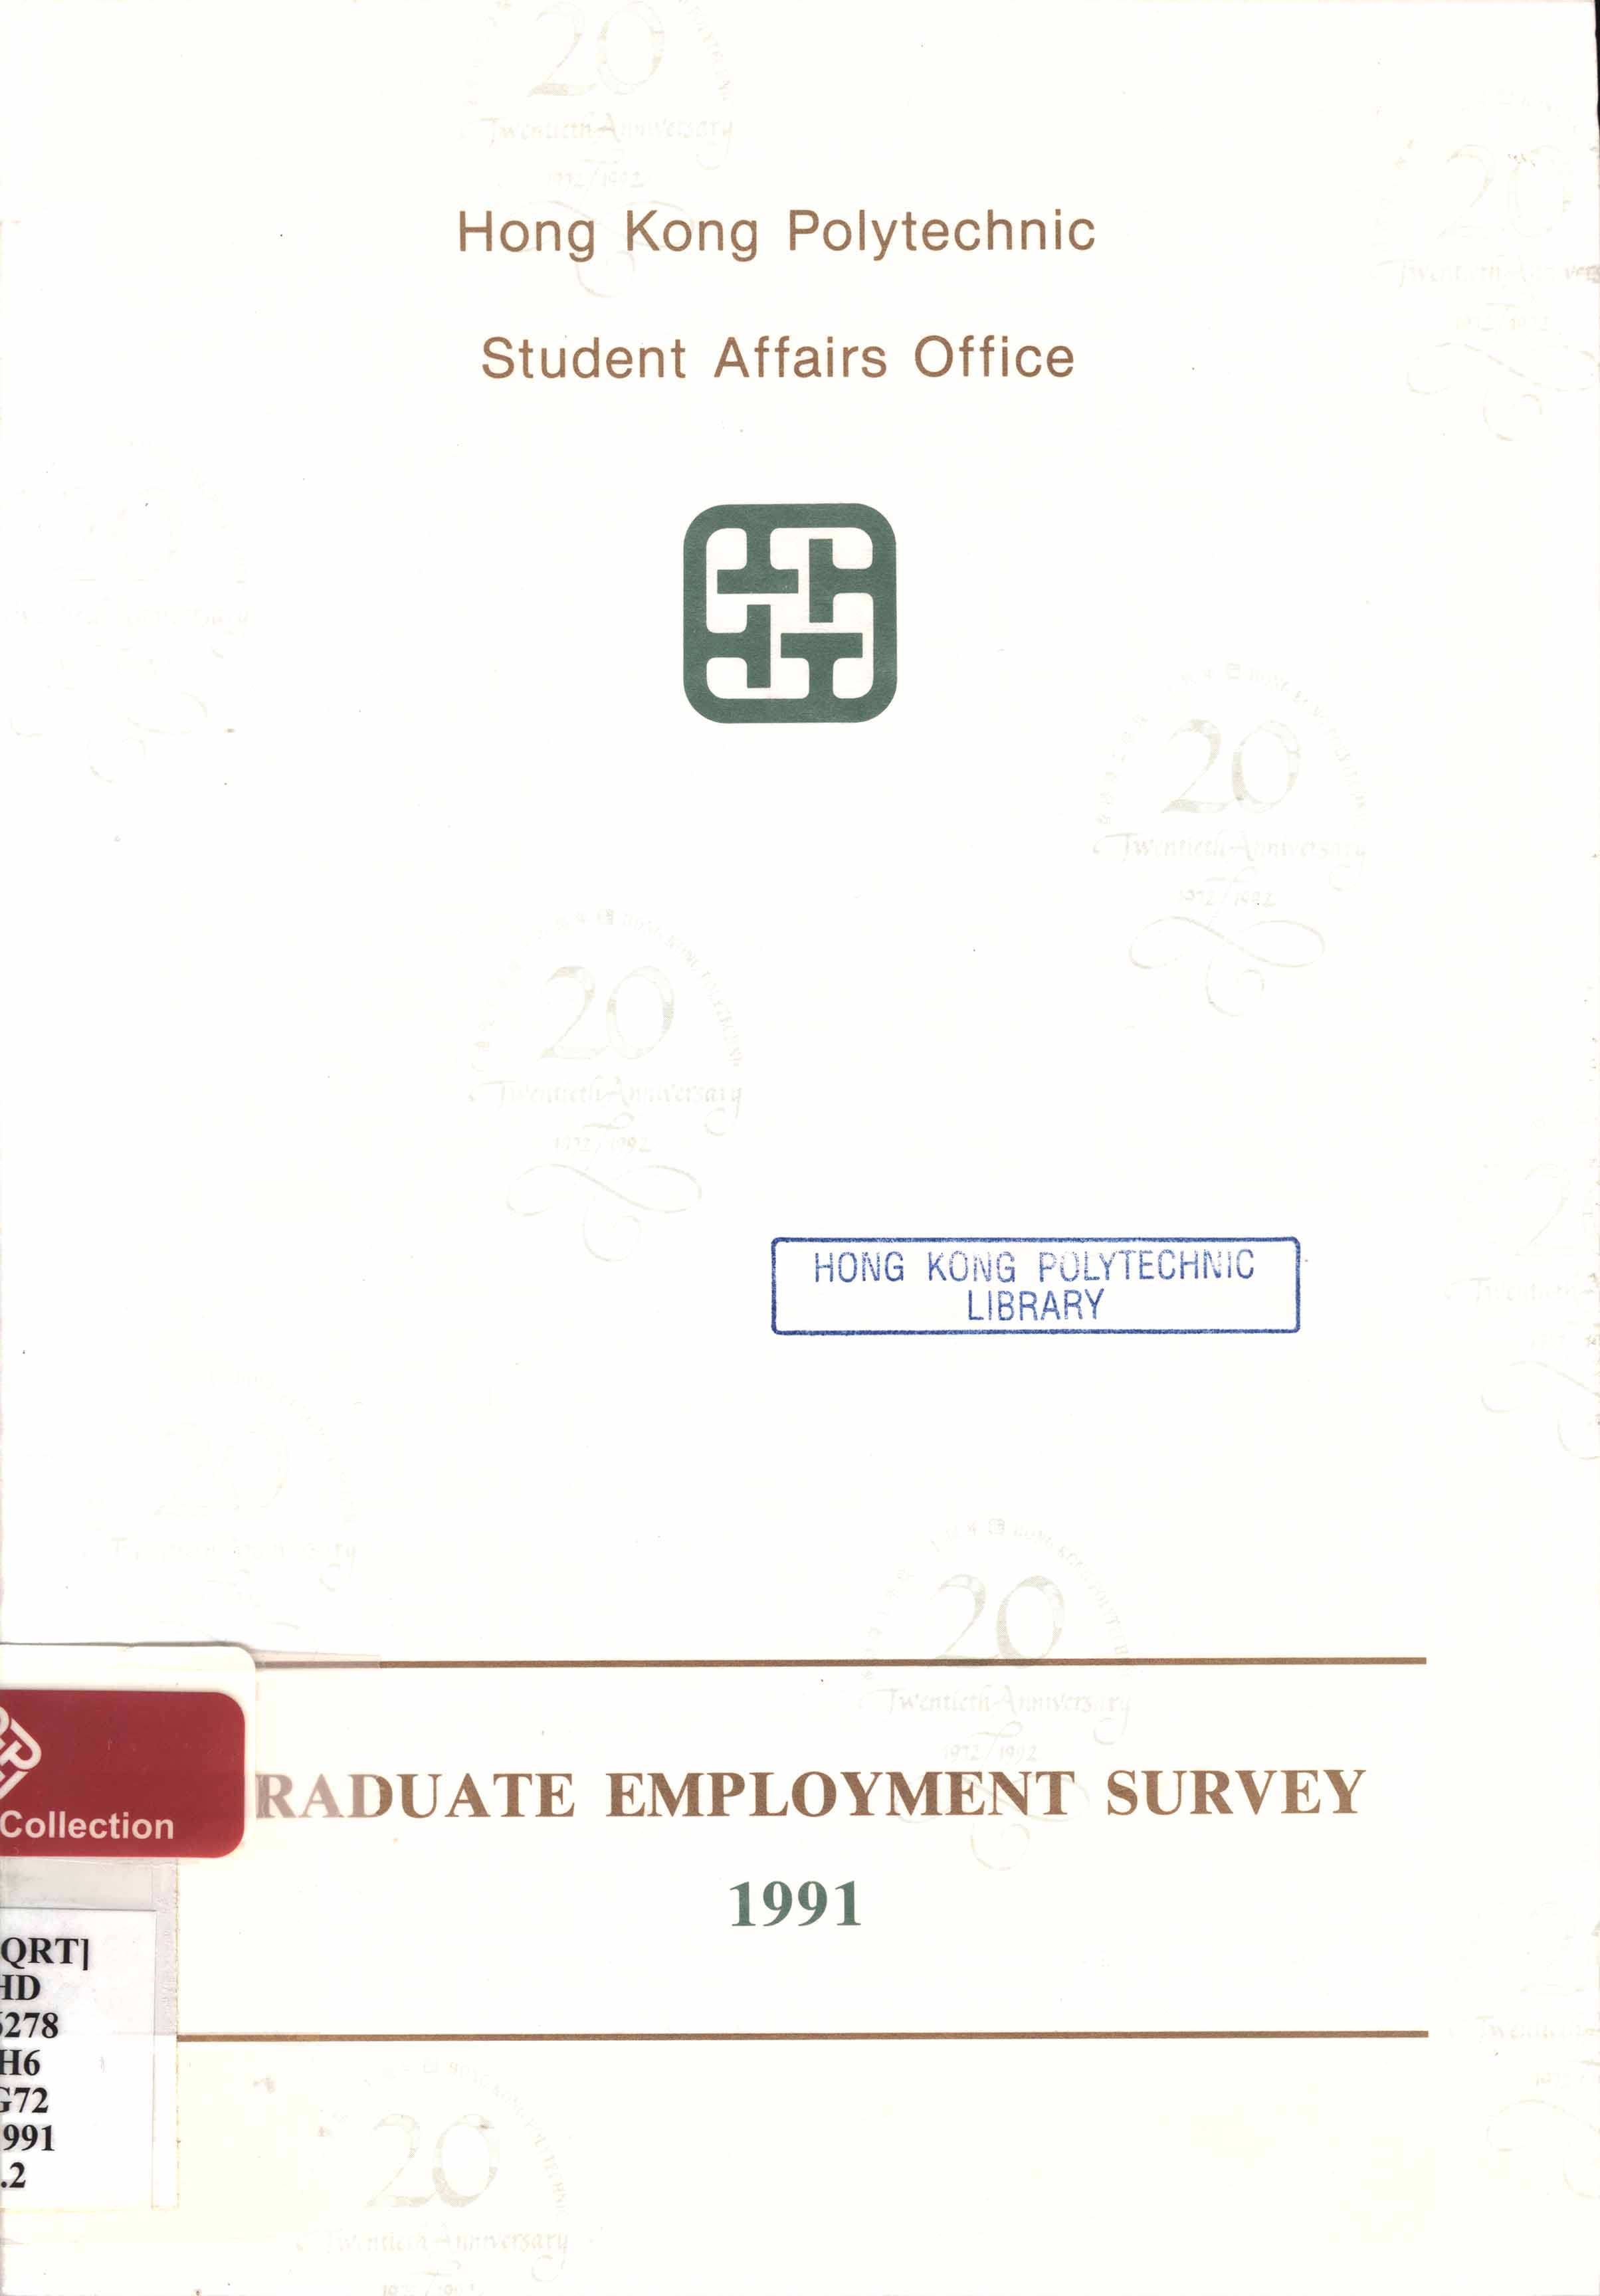 Graduate employment survey 1991